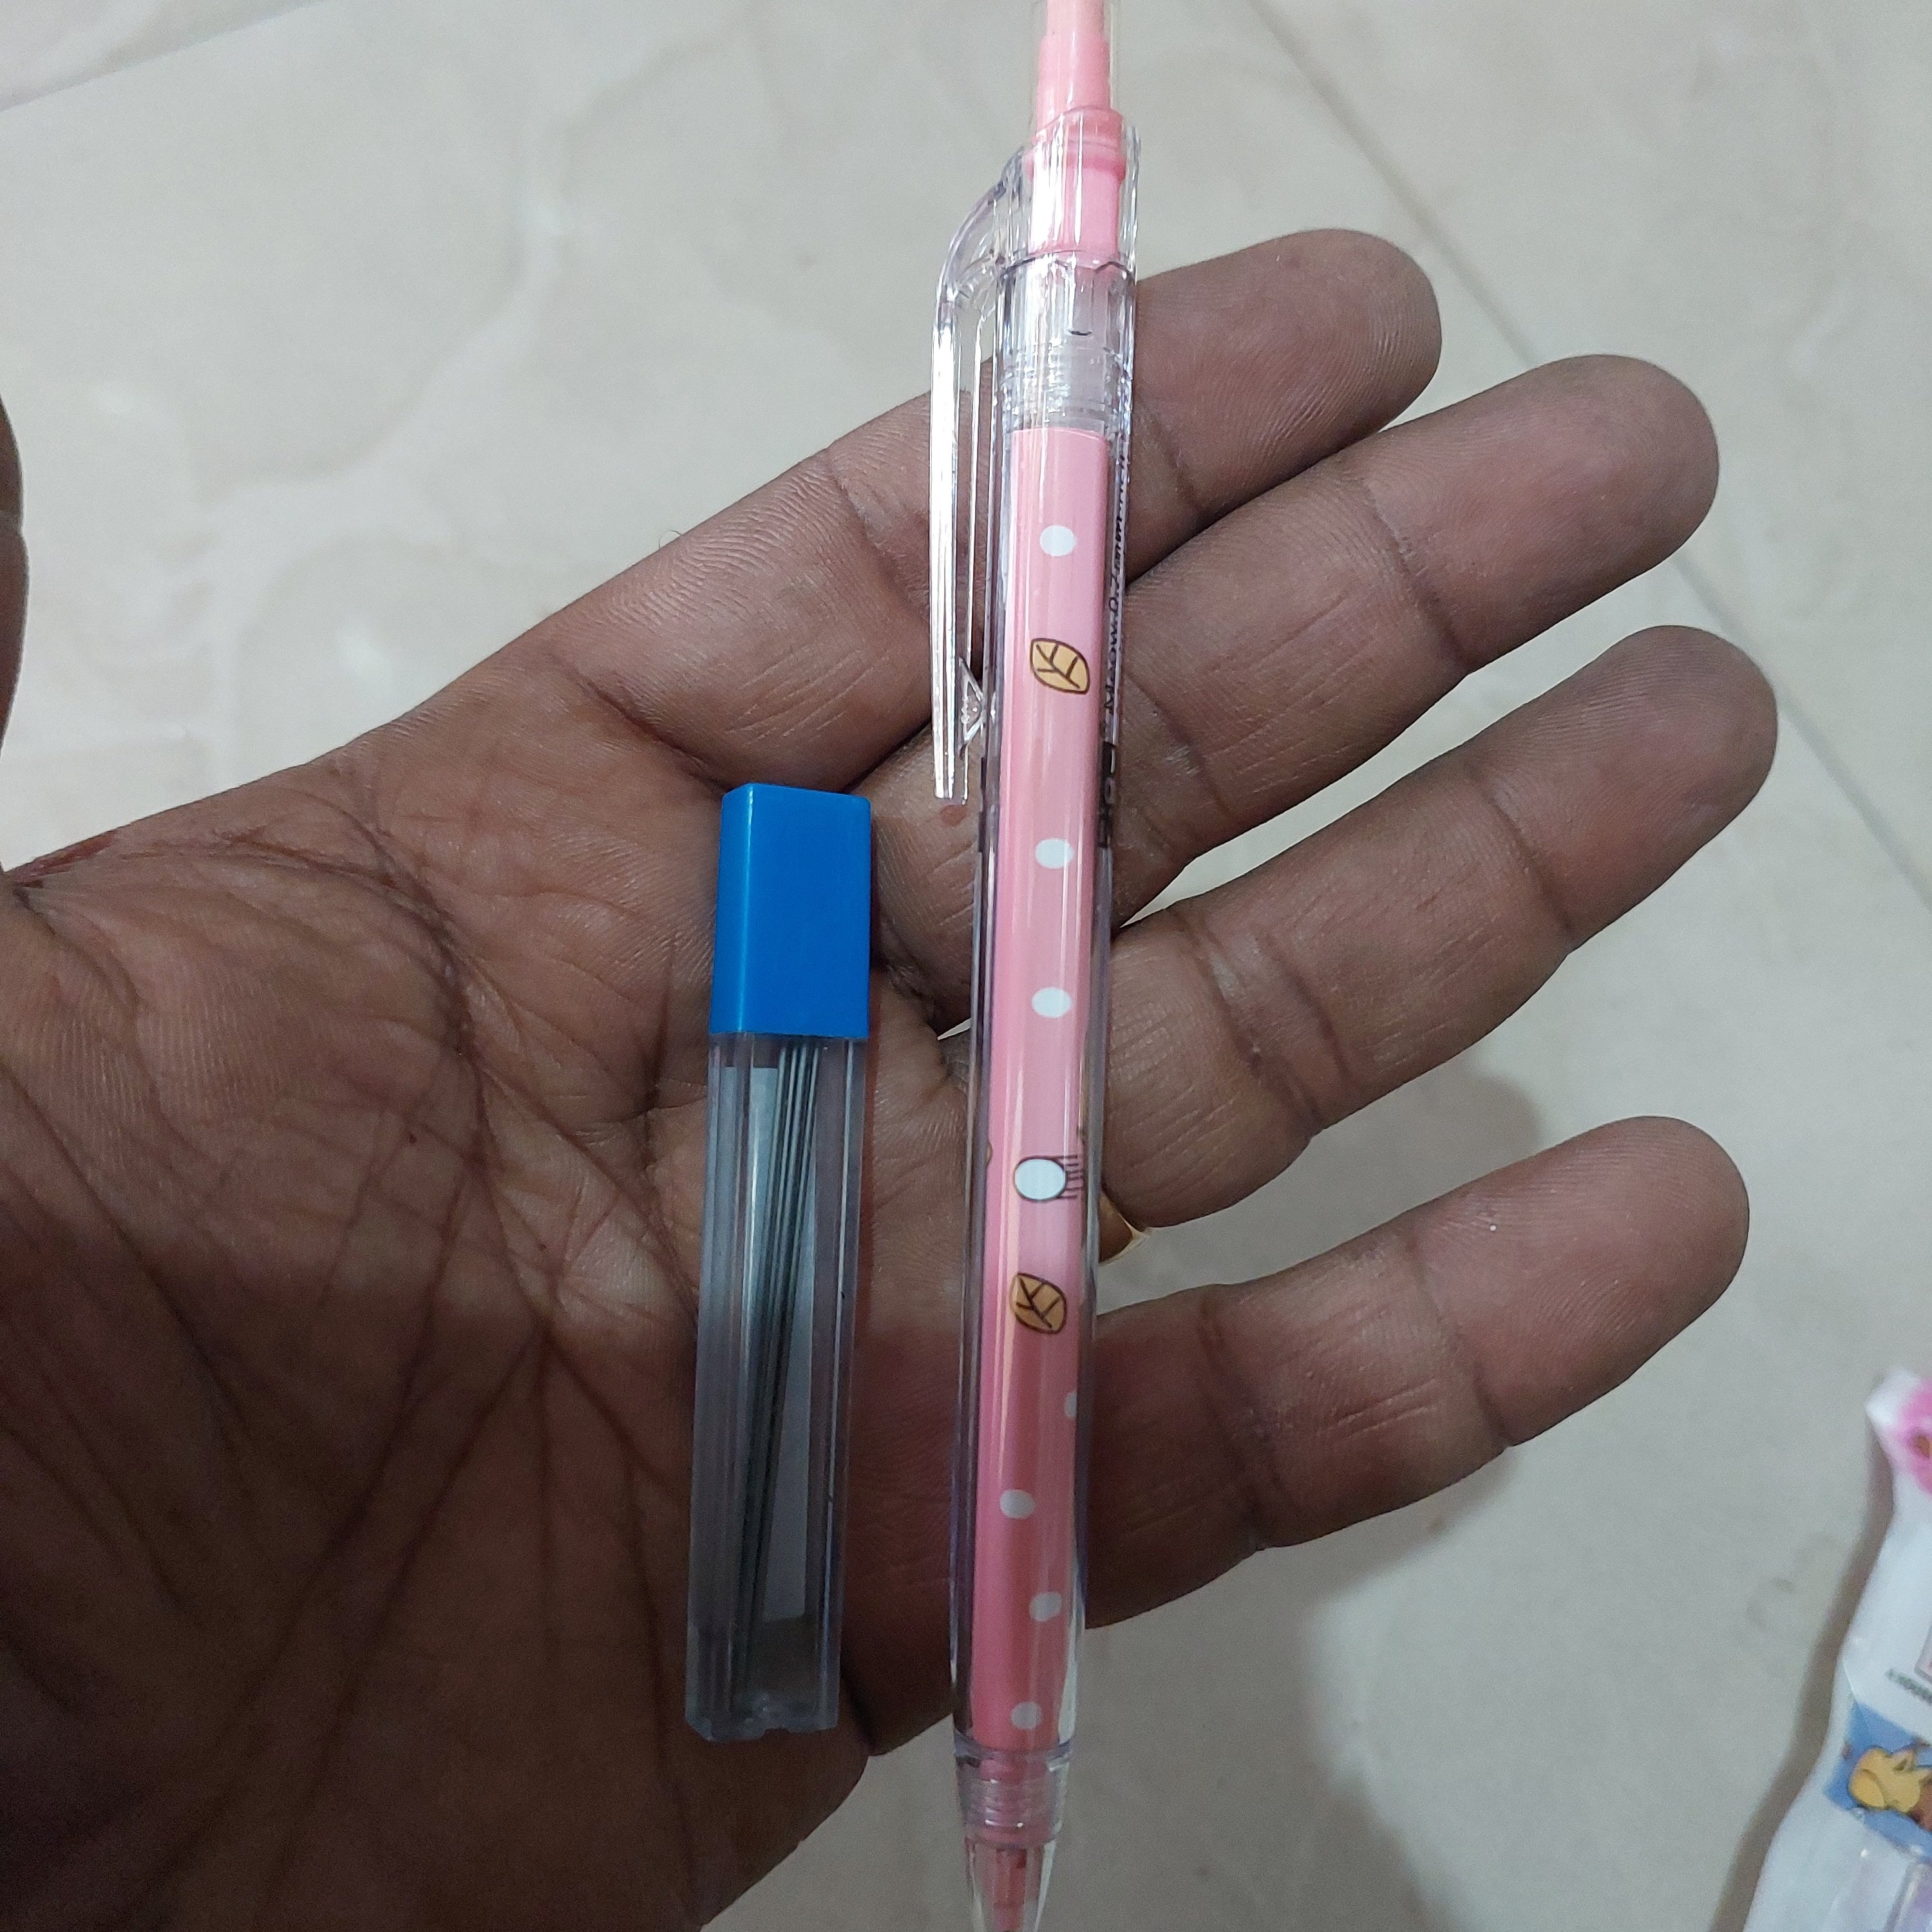 Figo meow -0.7mm mechanical pencil -2 pencil set